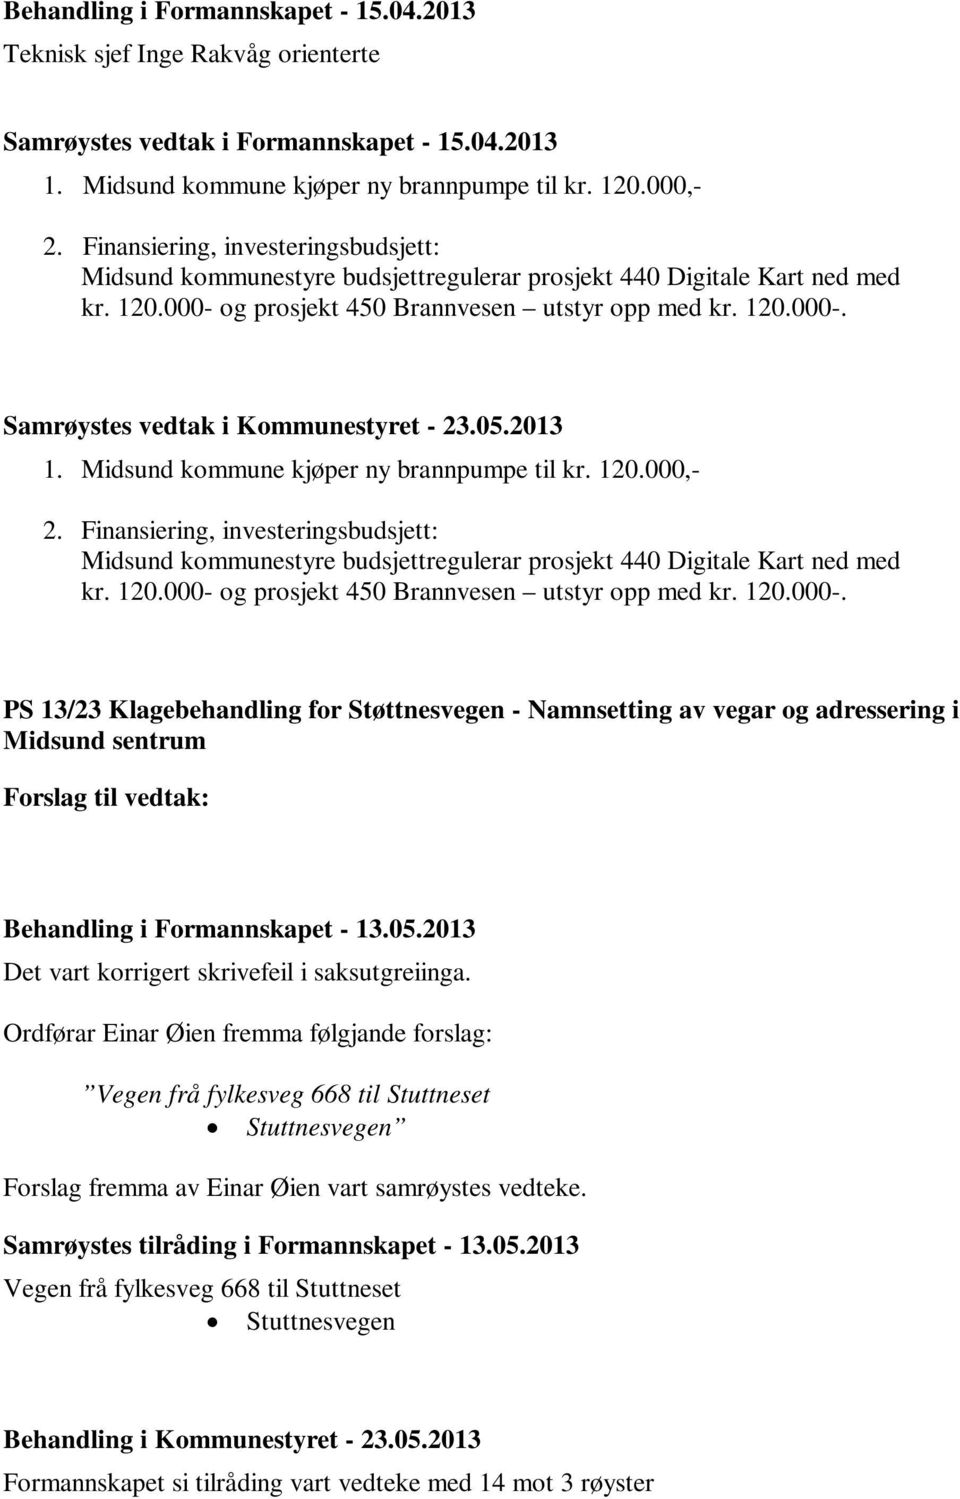 120.000,- 2. Finansiering, investeringsbudsjett: Midsund kommunestyre budsjettregulerar prosjekt 440 Digitale Kart ned med kr. 120.000- 